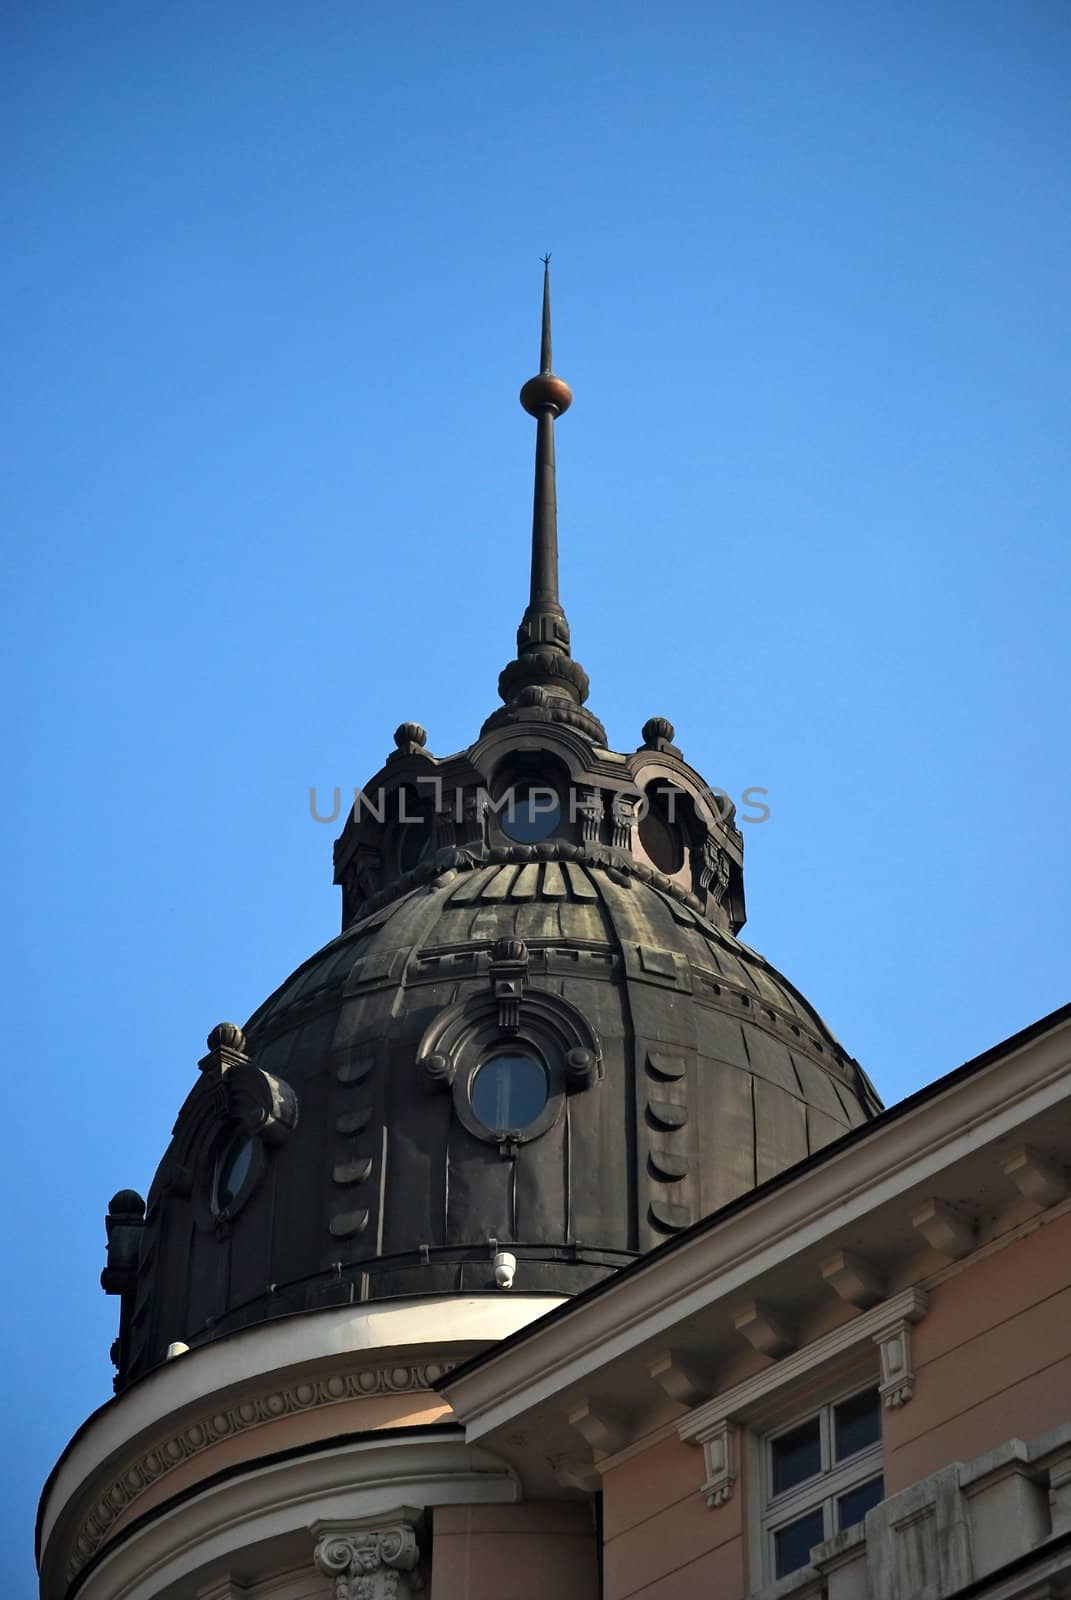 Top of neo-baroque building, details